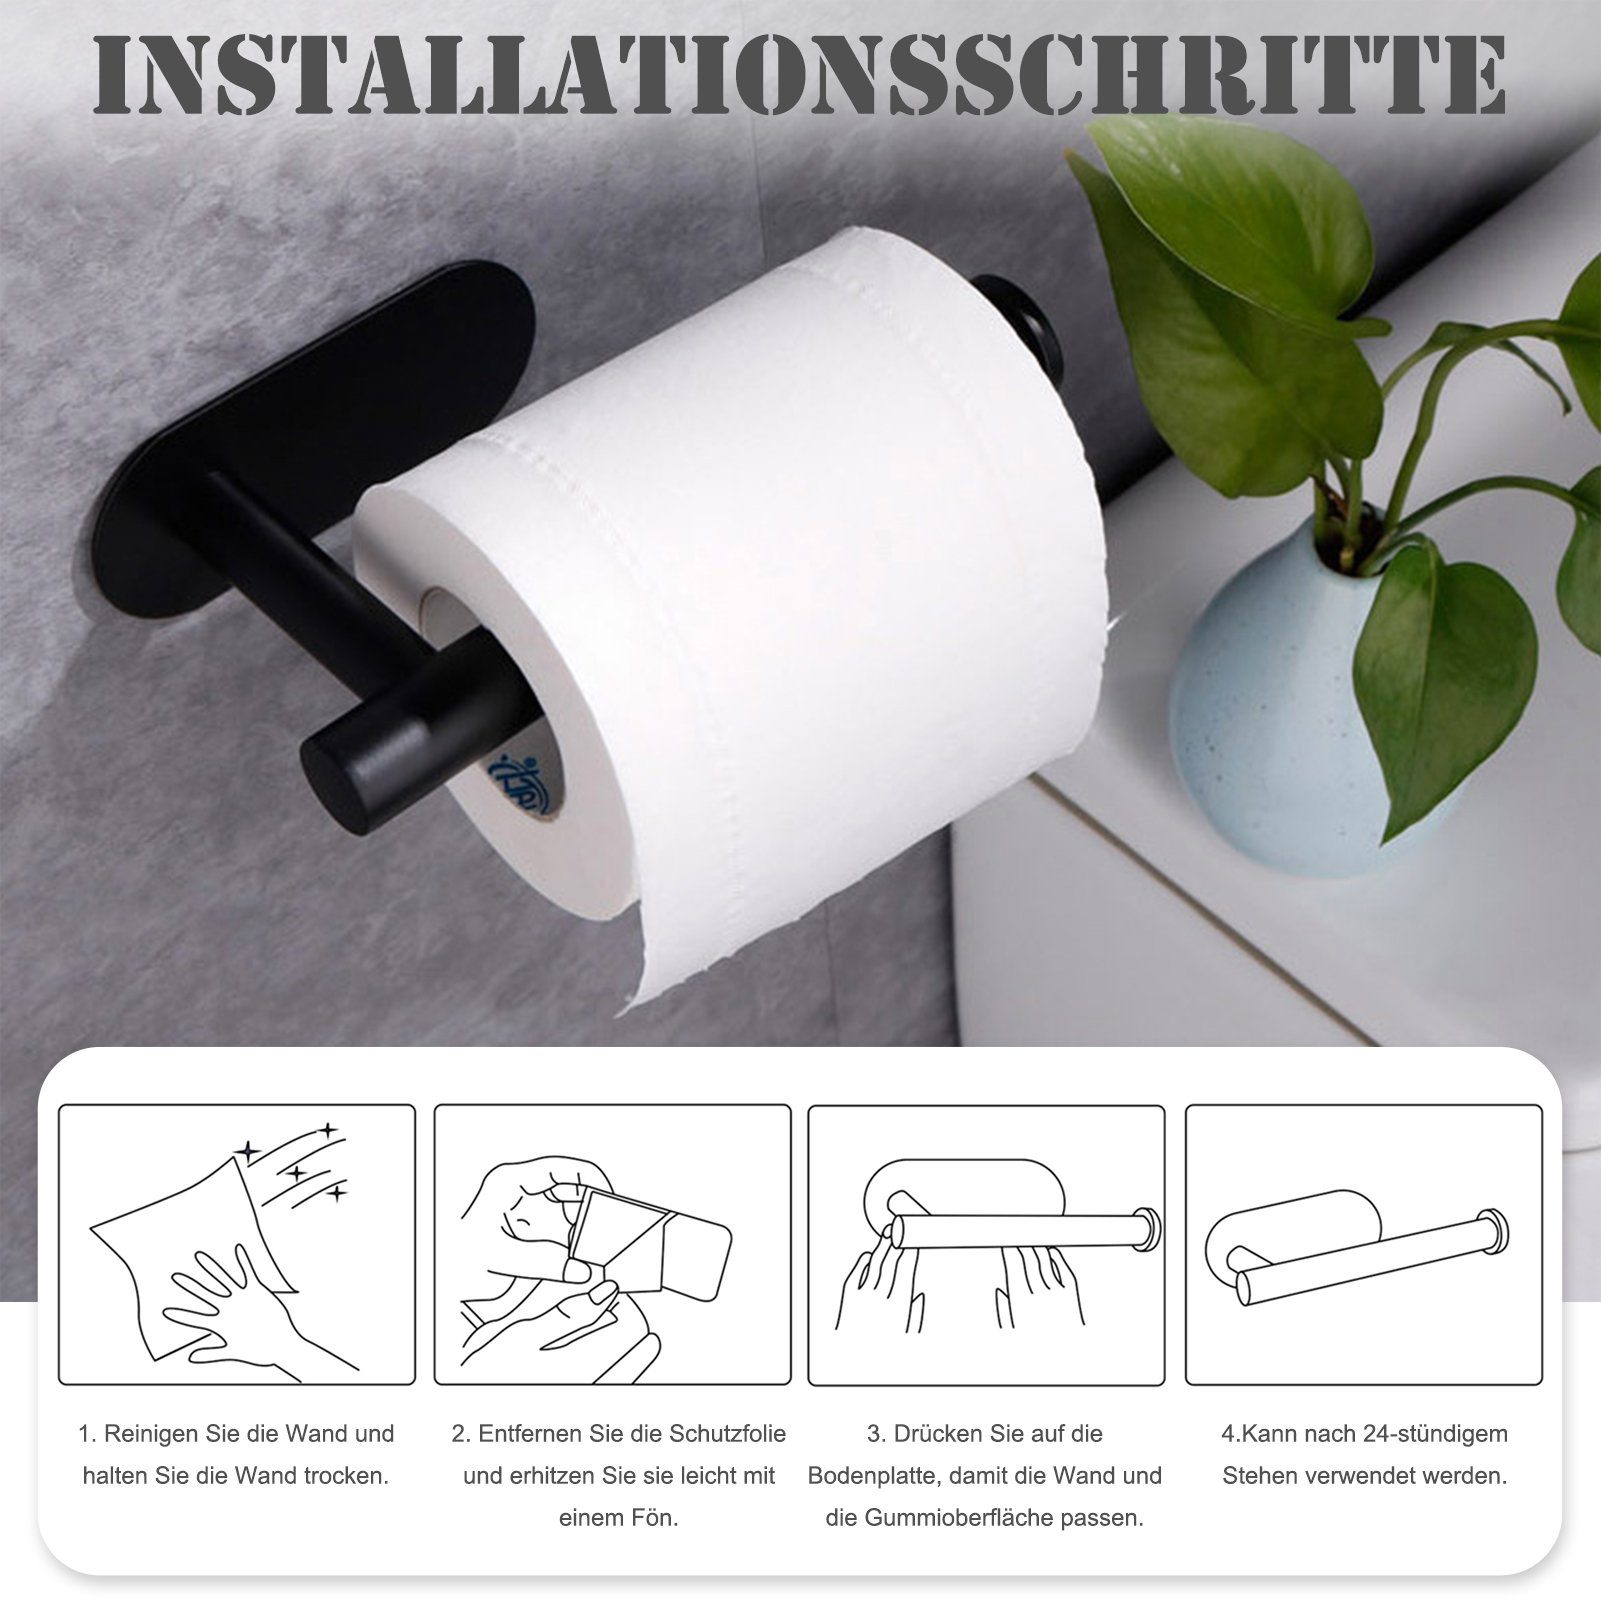 2 Toilettenpapierhalter selbstklebenden Edelstahl Handtuchhaken Mit Toilettenpapierhalter (3-St), MDHAND